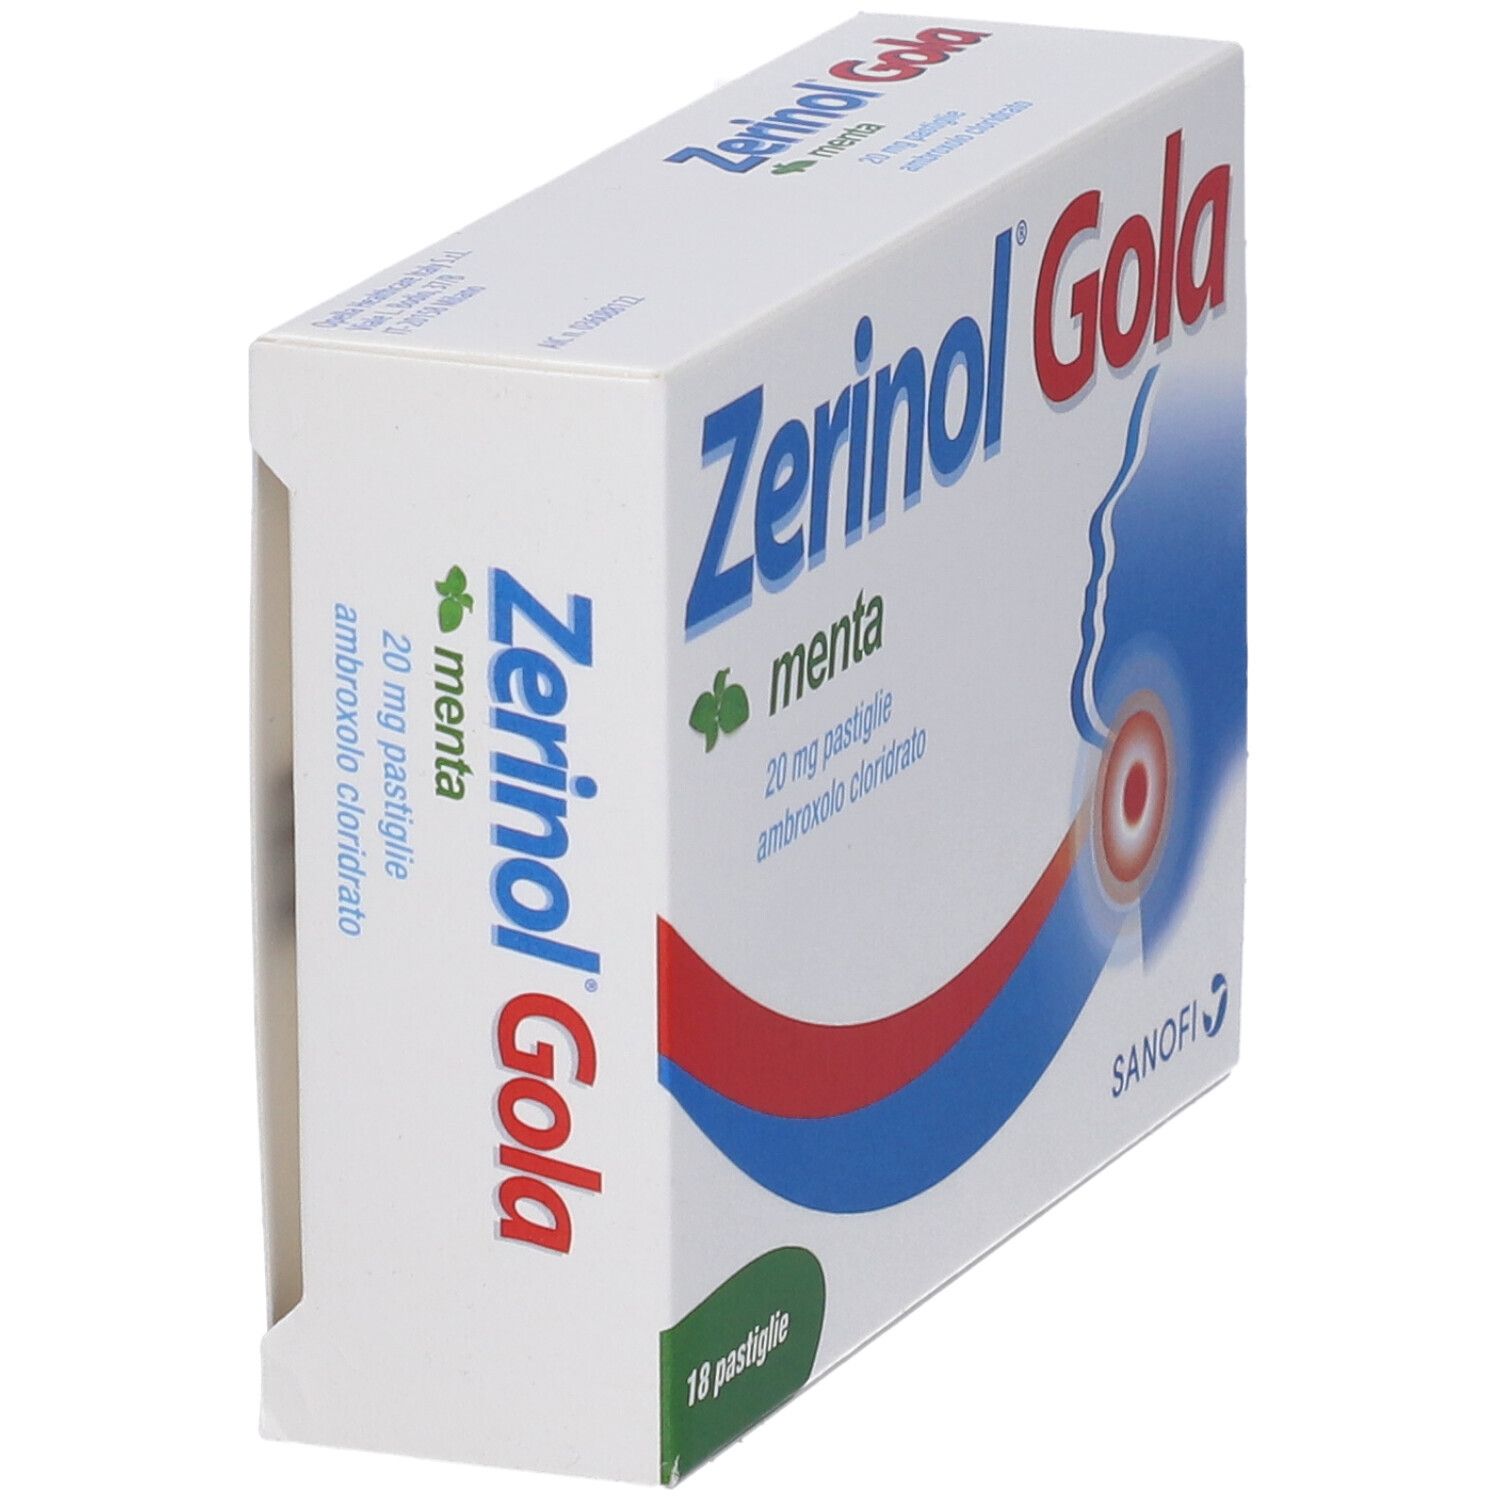 Zerinol® Gola Menta